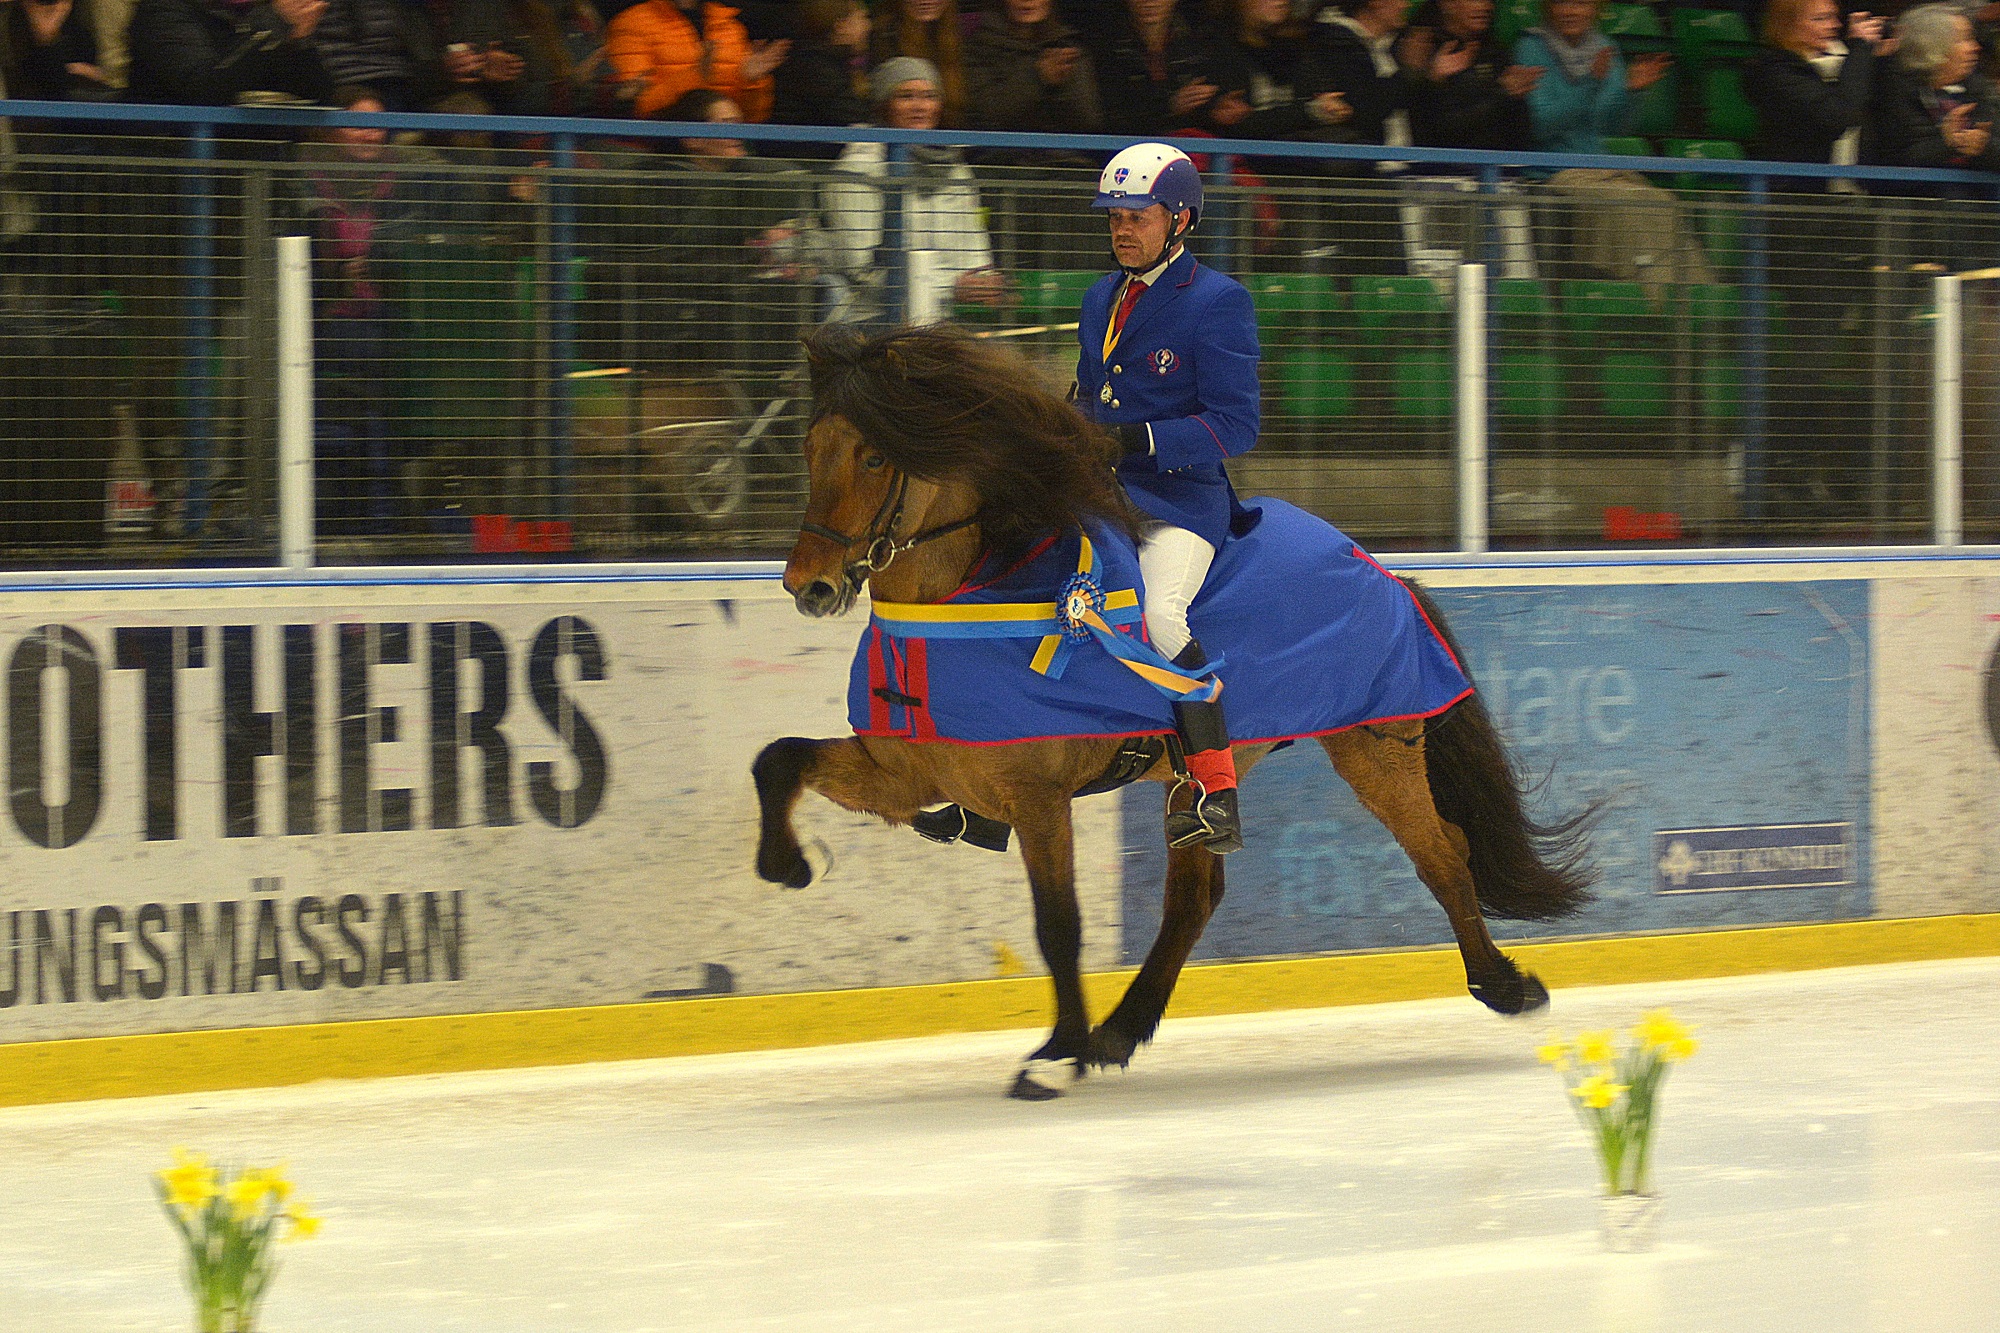 Jóhann R Skúlason segrade i 2015 års Tölt on Ice på sin fantastiska häst Hnokki frá Fellskoti (foto: Treell Photo)